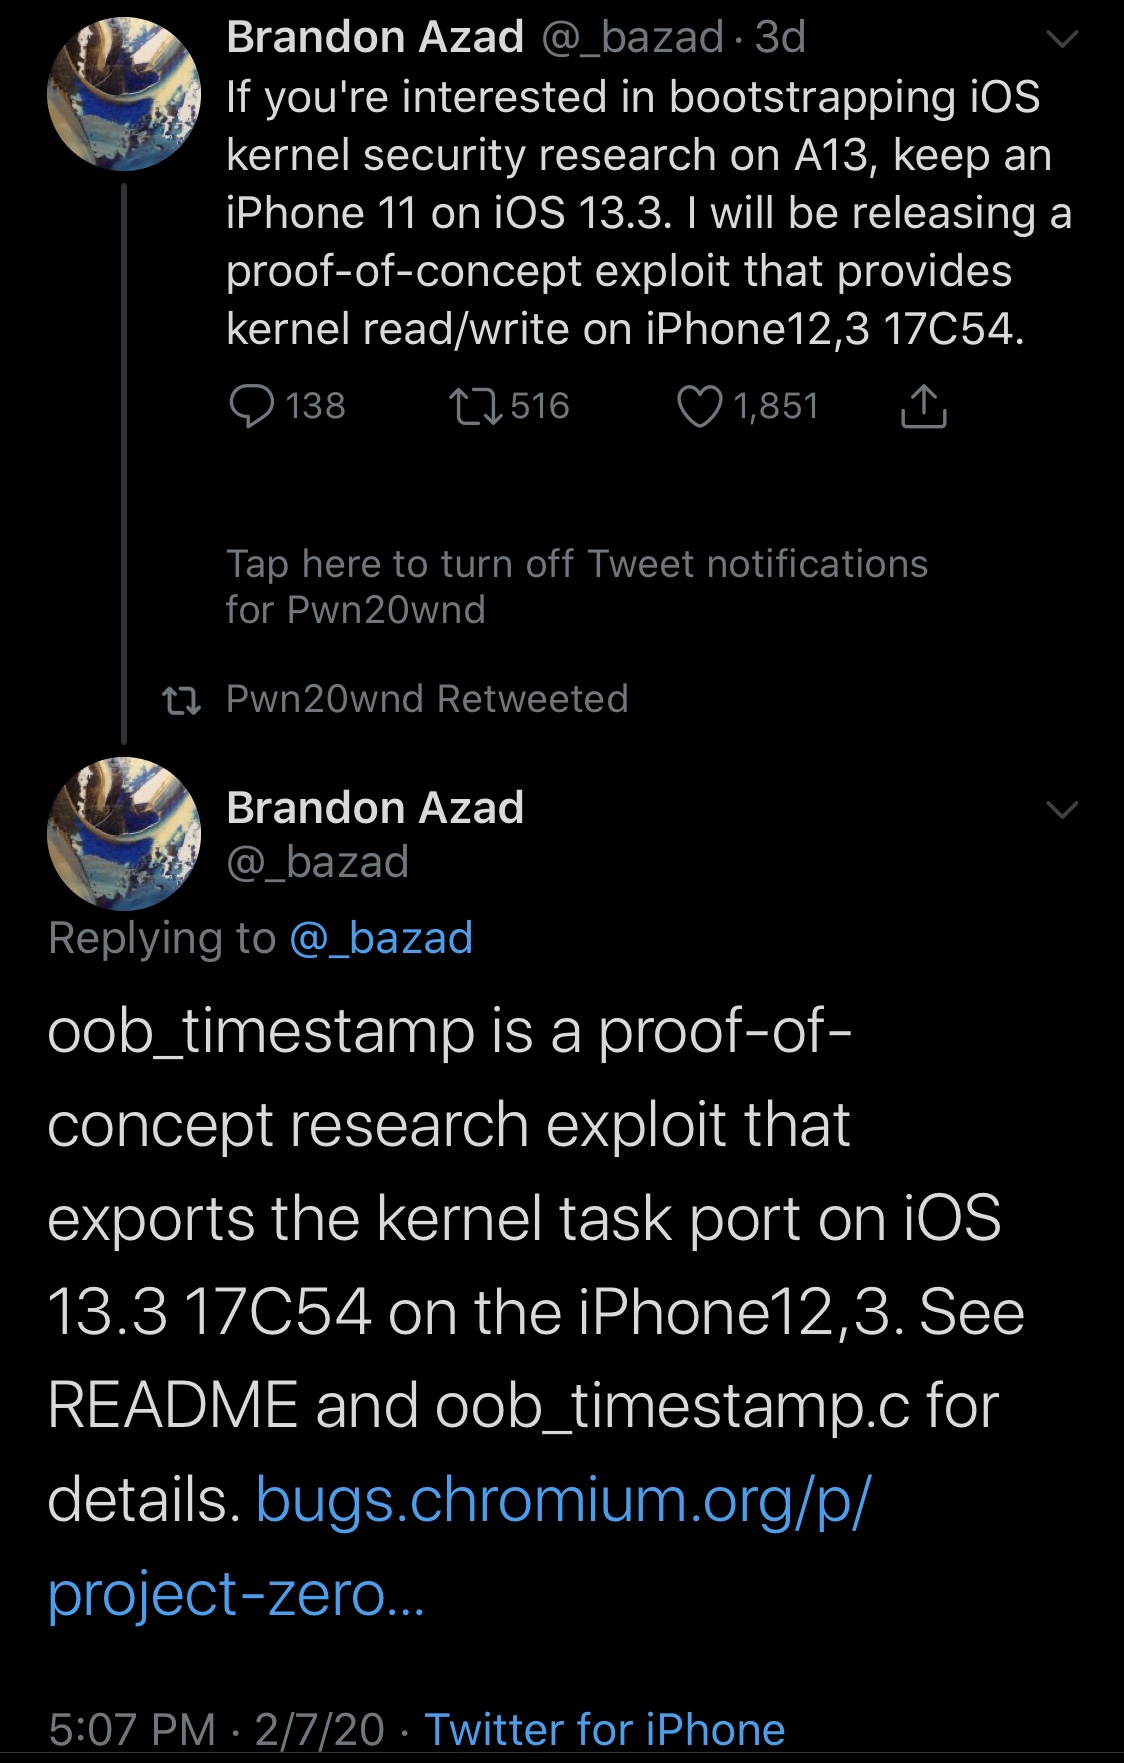 Brandon Azad lanserade officiellt OOB Timestamp exploit för iOS 13.0-13.3 3